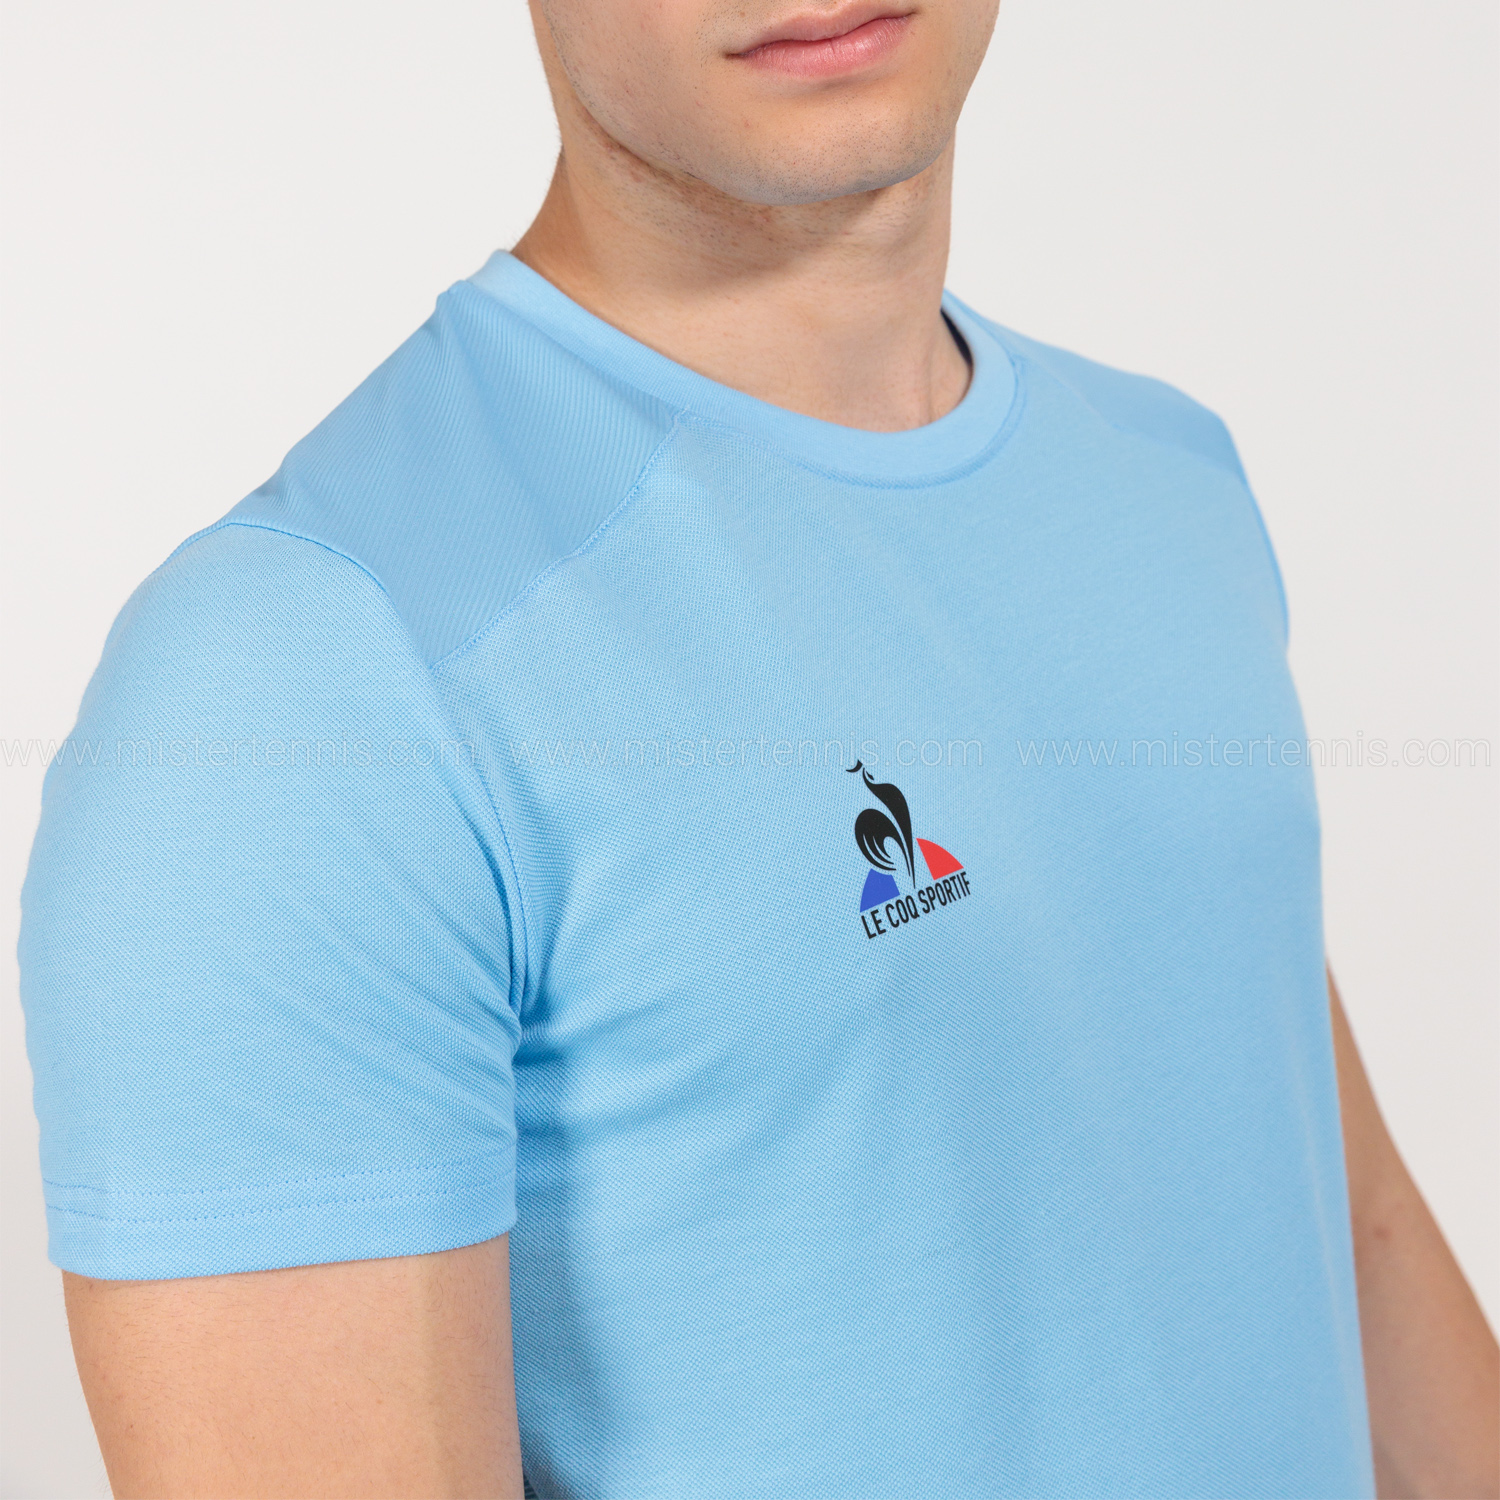 Le Coq Sportif Performance T-Shirt - Flye Blue